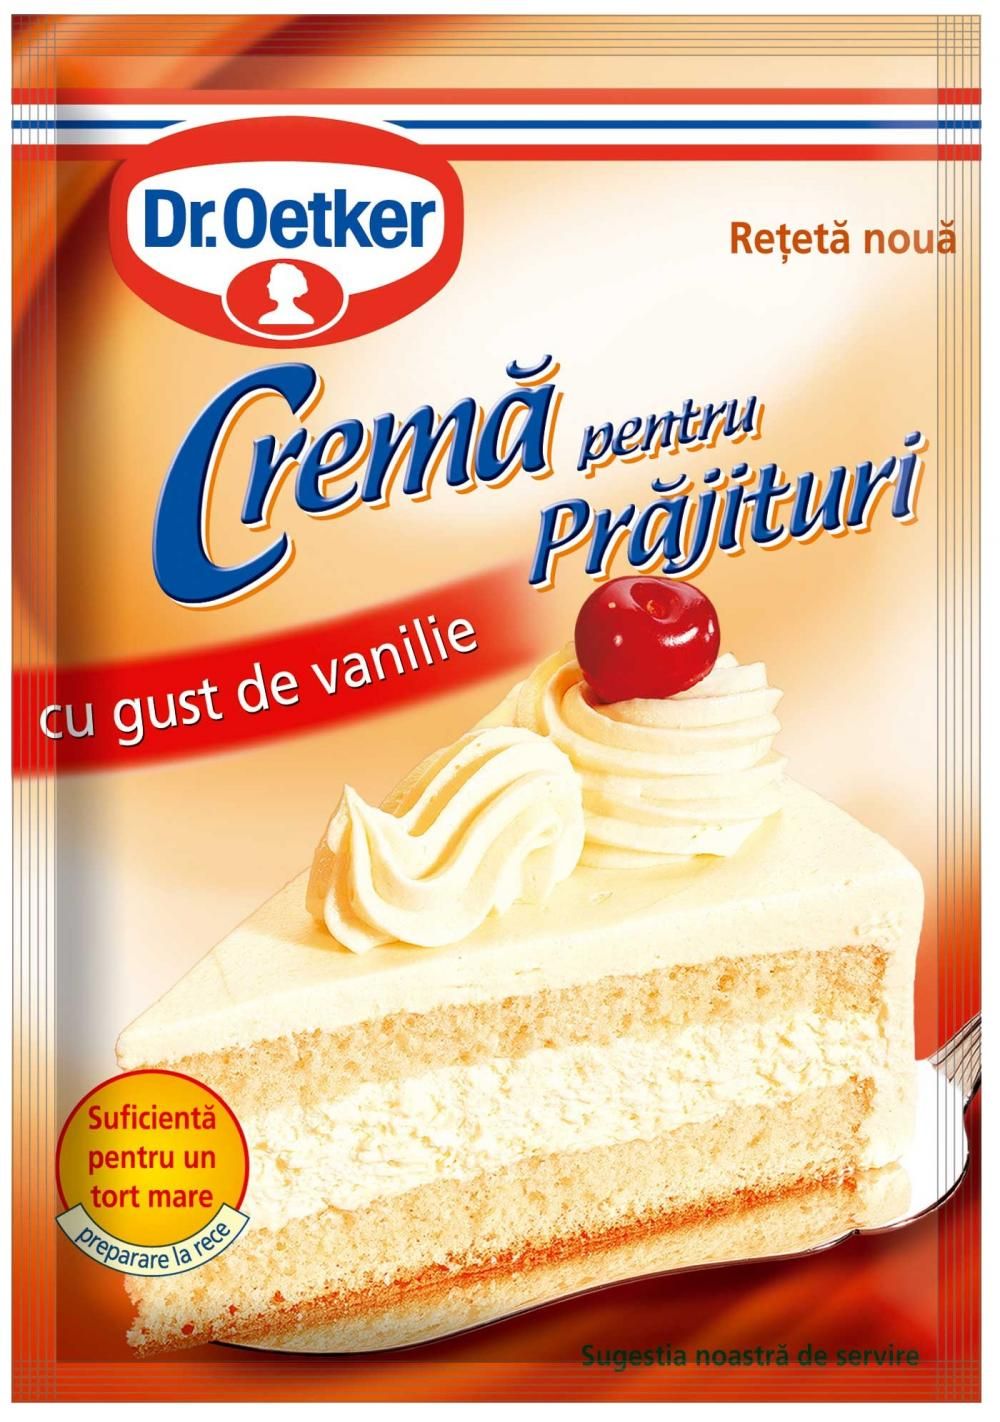 Biscuiti DayDream Cream cu cremă de vanilie, RoStar